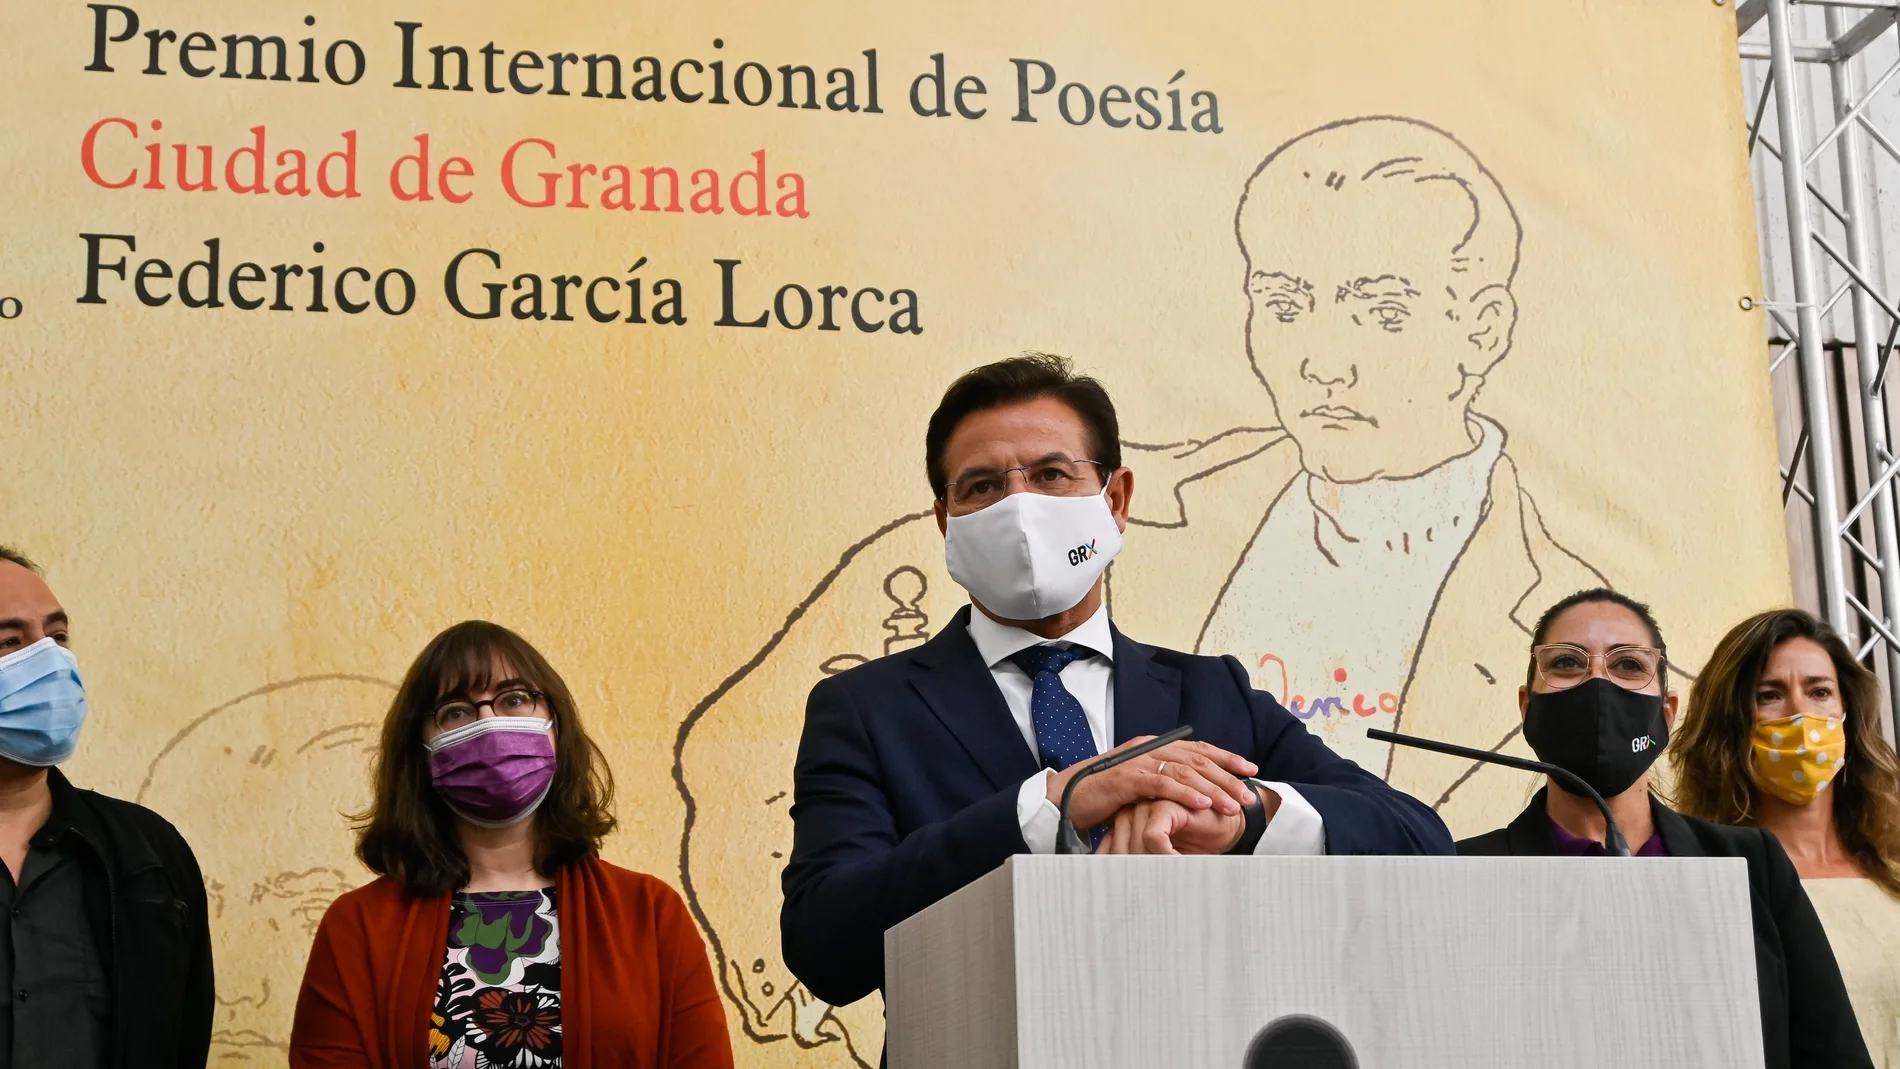 El alcalde de Granada, Luis Salvador, acompañado por parte del jurado, durante el fallo del Premio Internacional de Poesía Ciudad de Granada Federico García Lorca